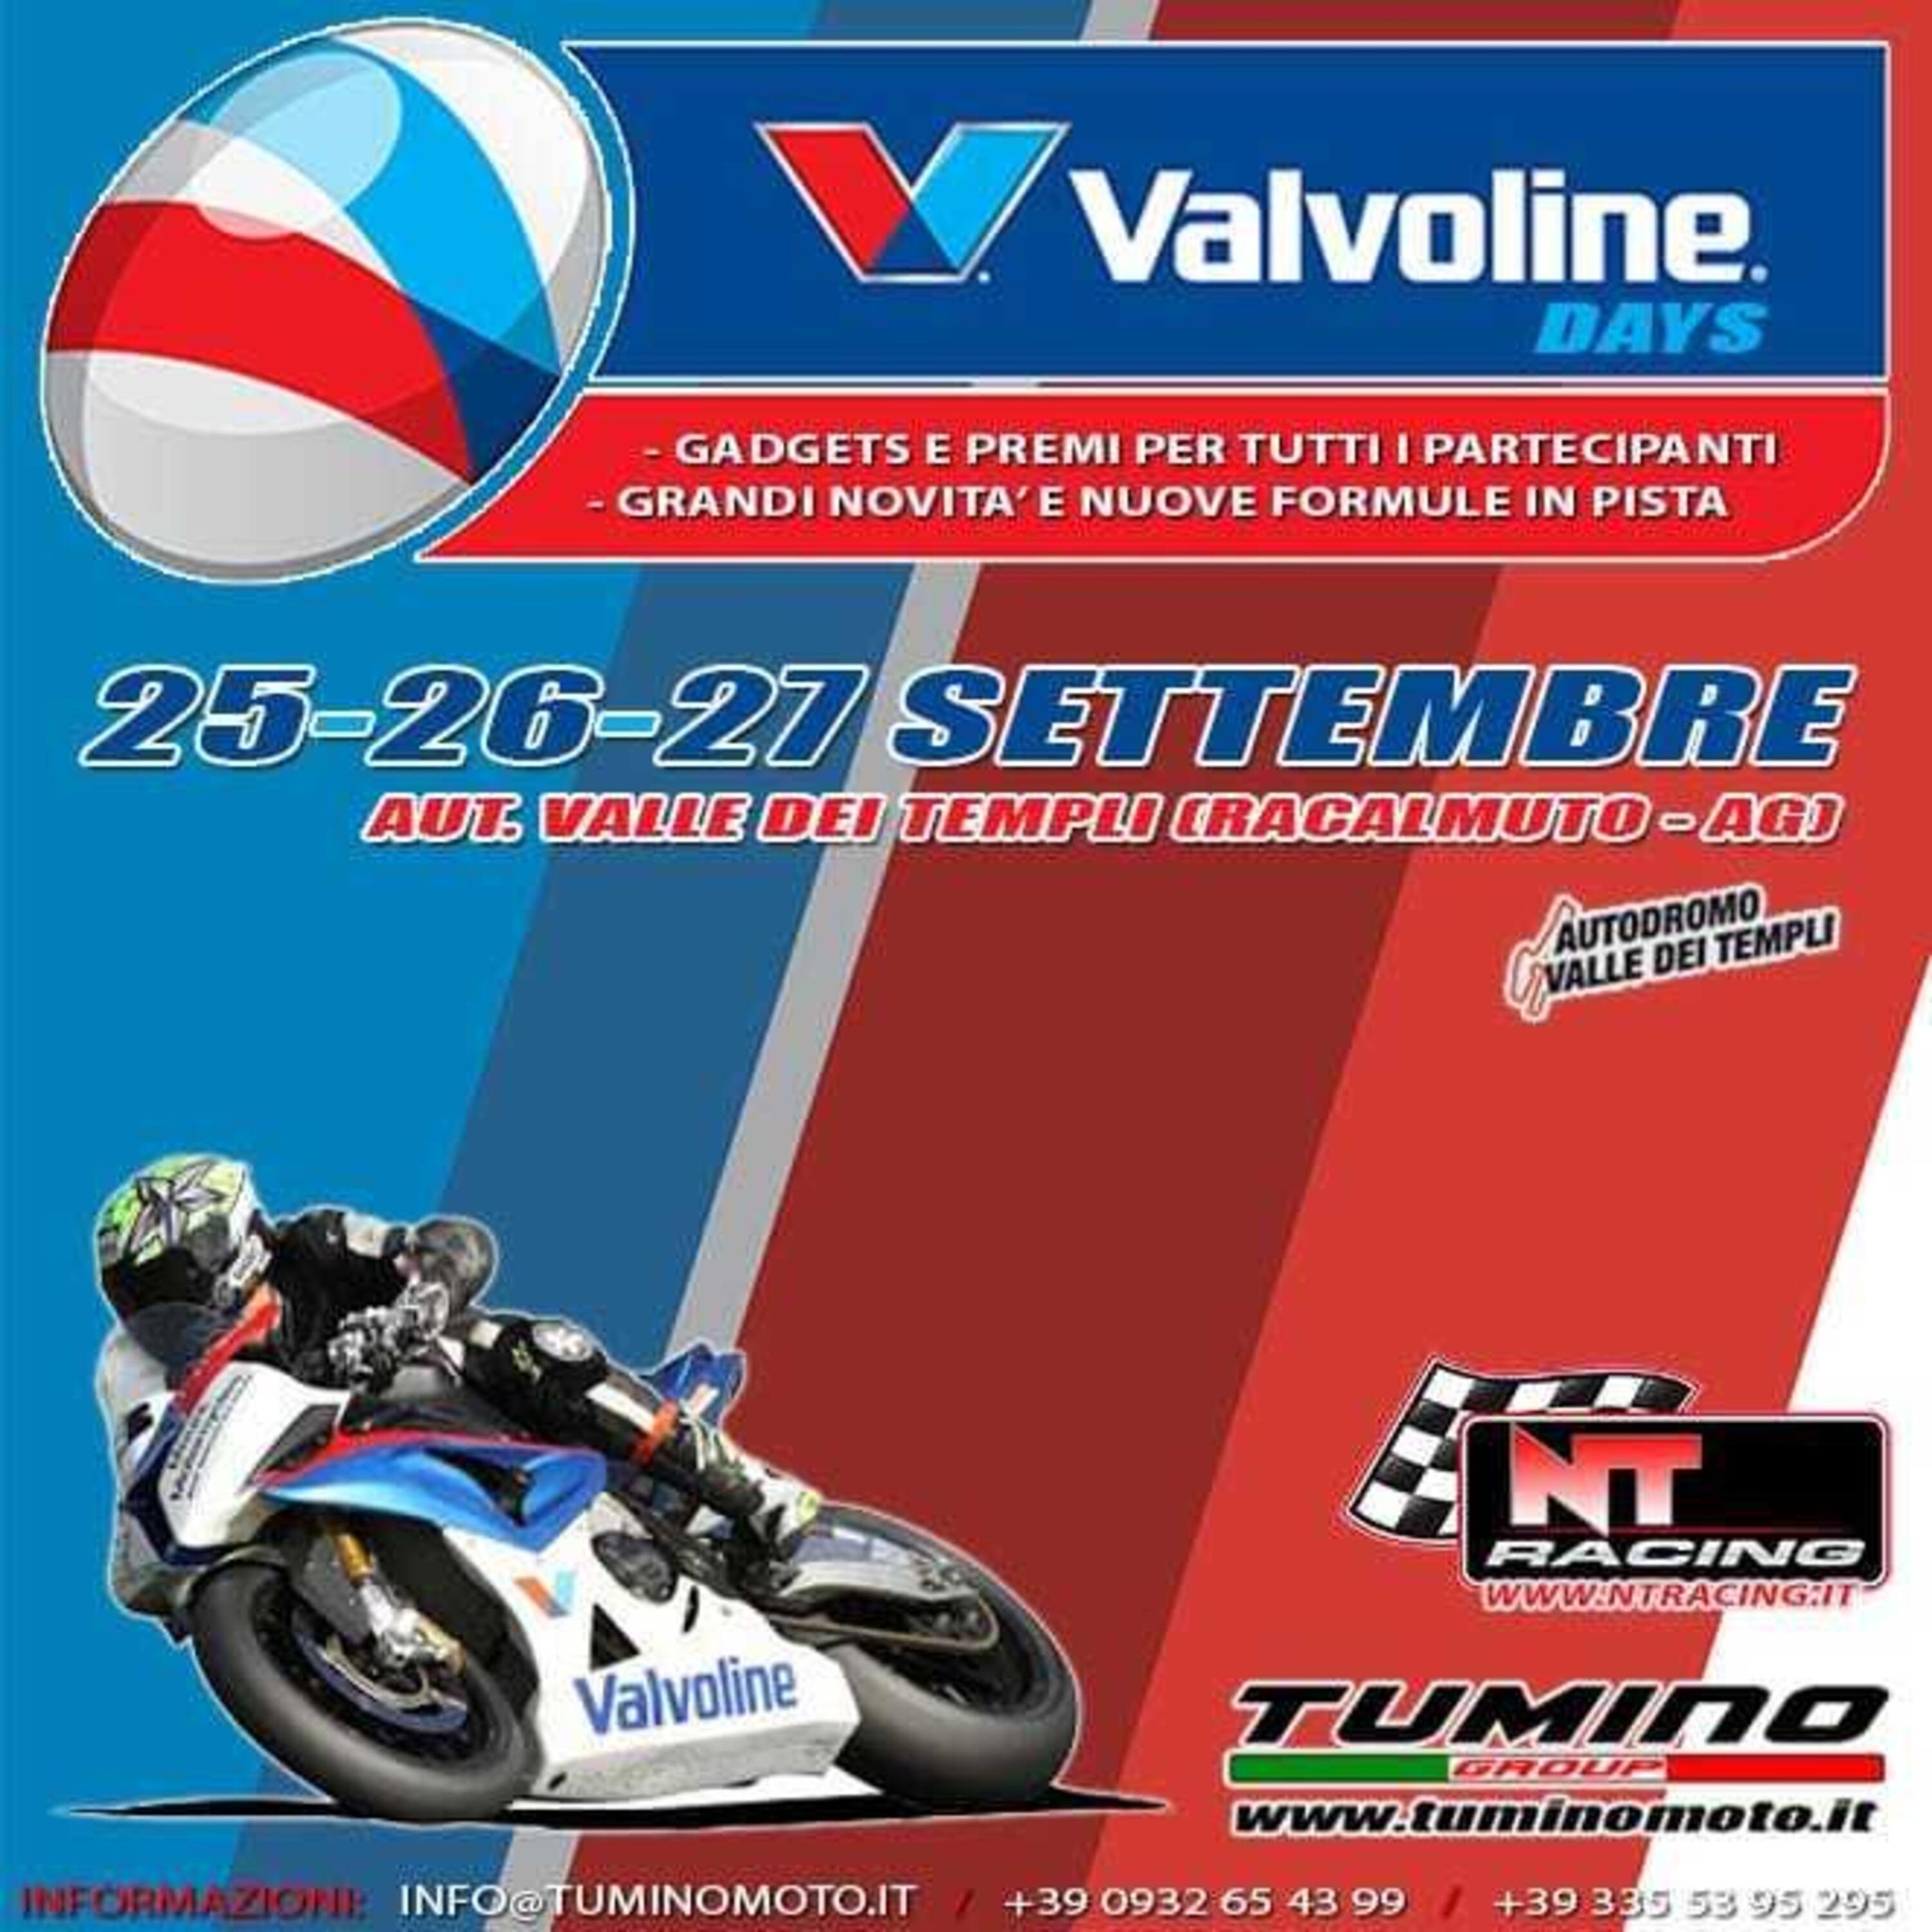 Tumino Moto organizza i Valvoline Days a Racalmuto dal 25 al 27 settembre